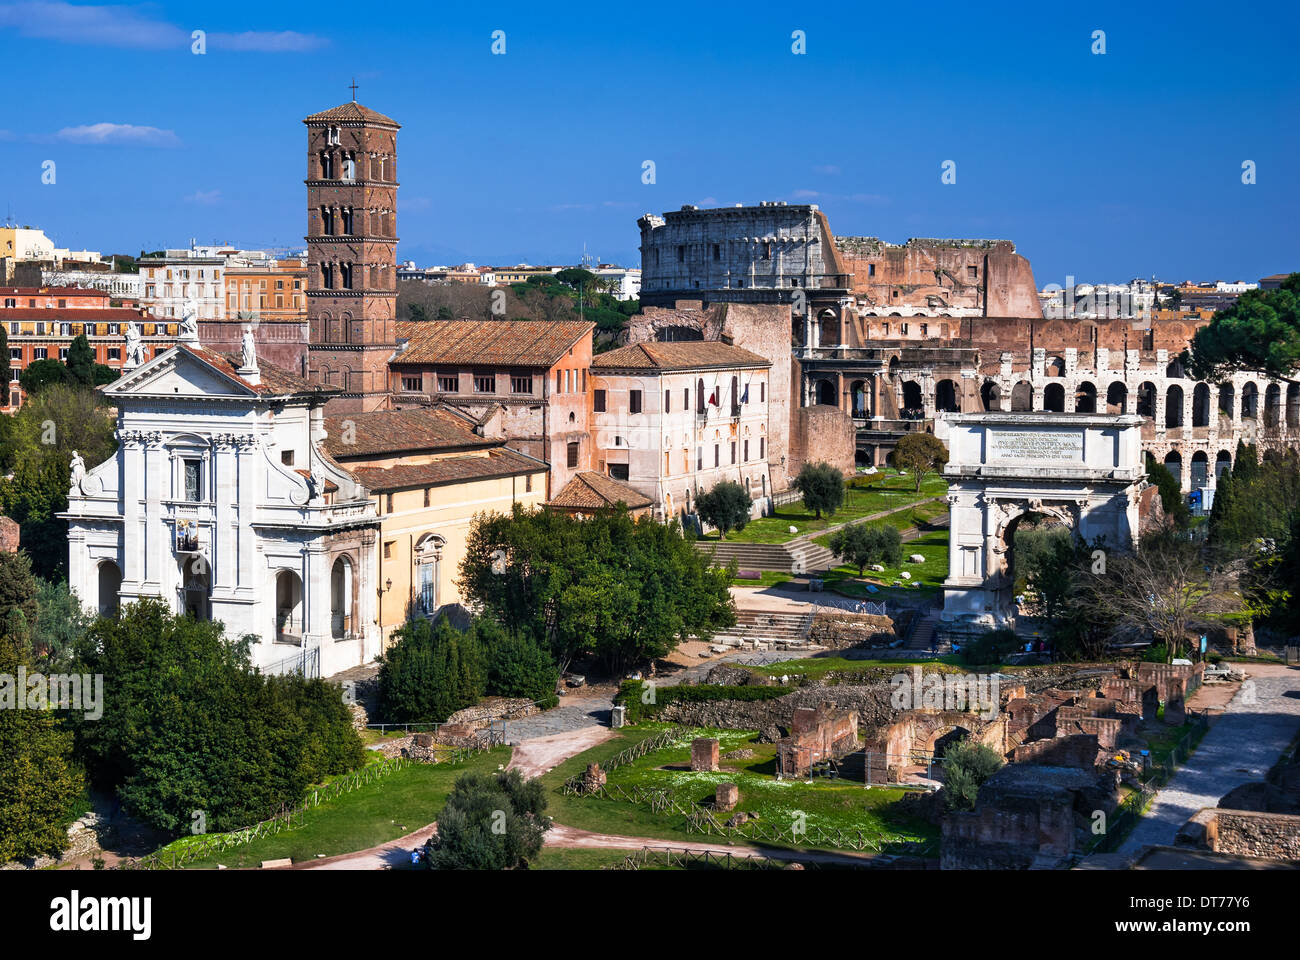 Roma, Italia. Immagine con rovine dell antico Foro Romano e il Colosseo (Colosseo), dall Impero Romano la civiltà. Foto Stock